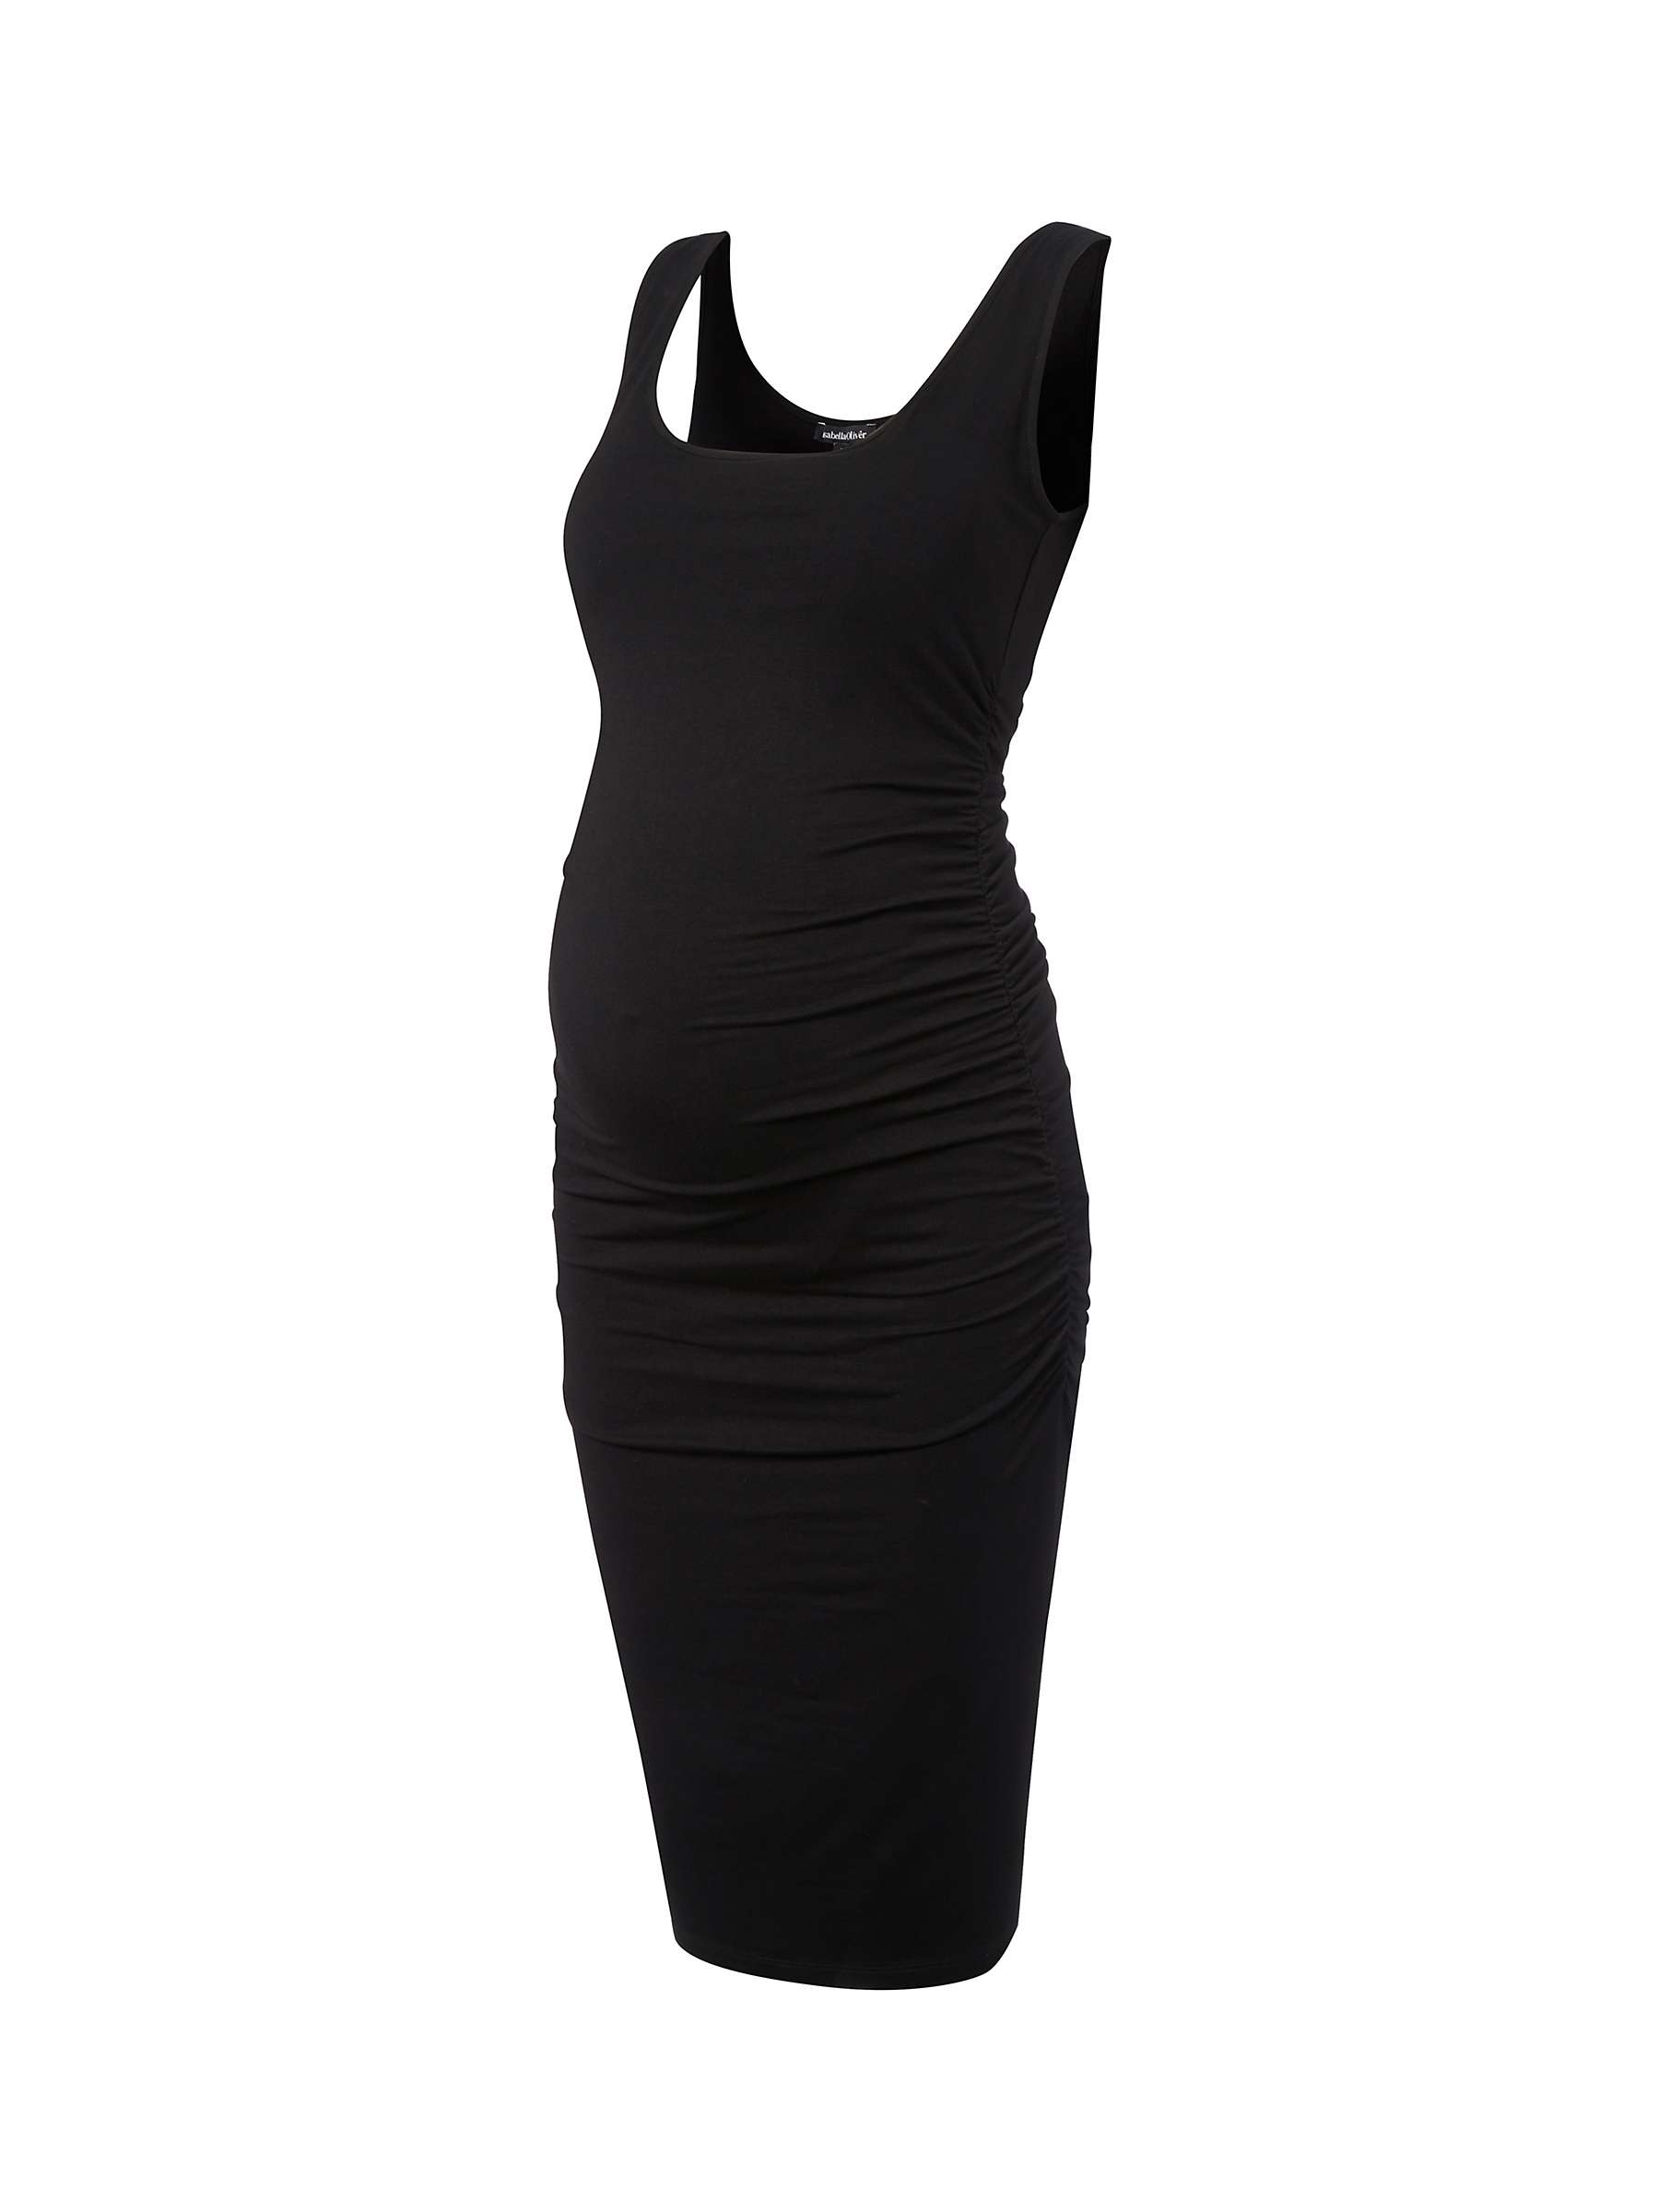 Buy Isabella Oliver Ellis Maternity Dress, Black Online at johnlewis.com